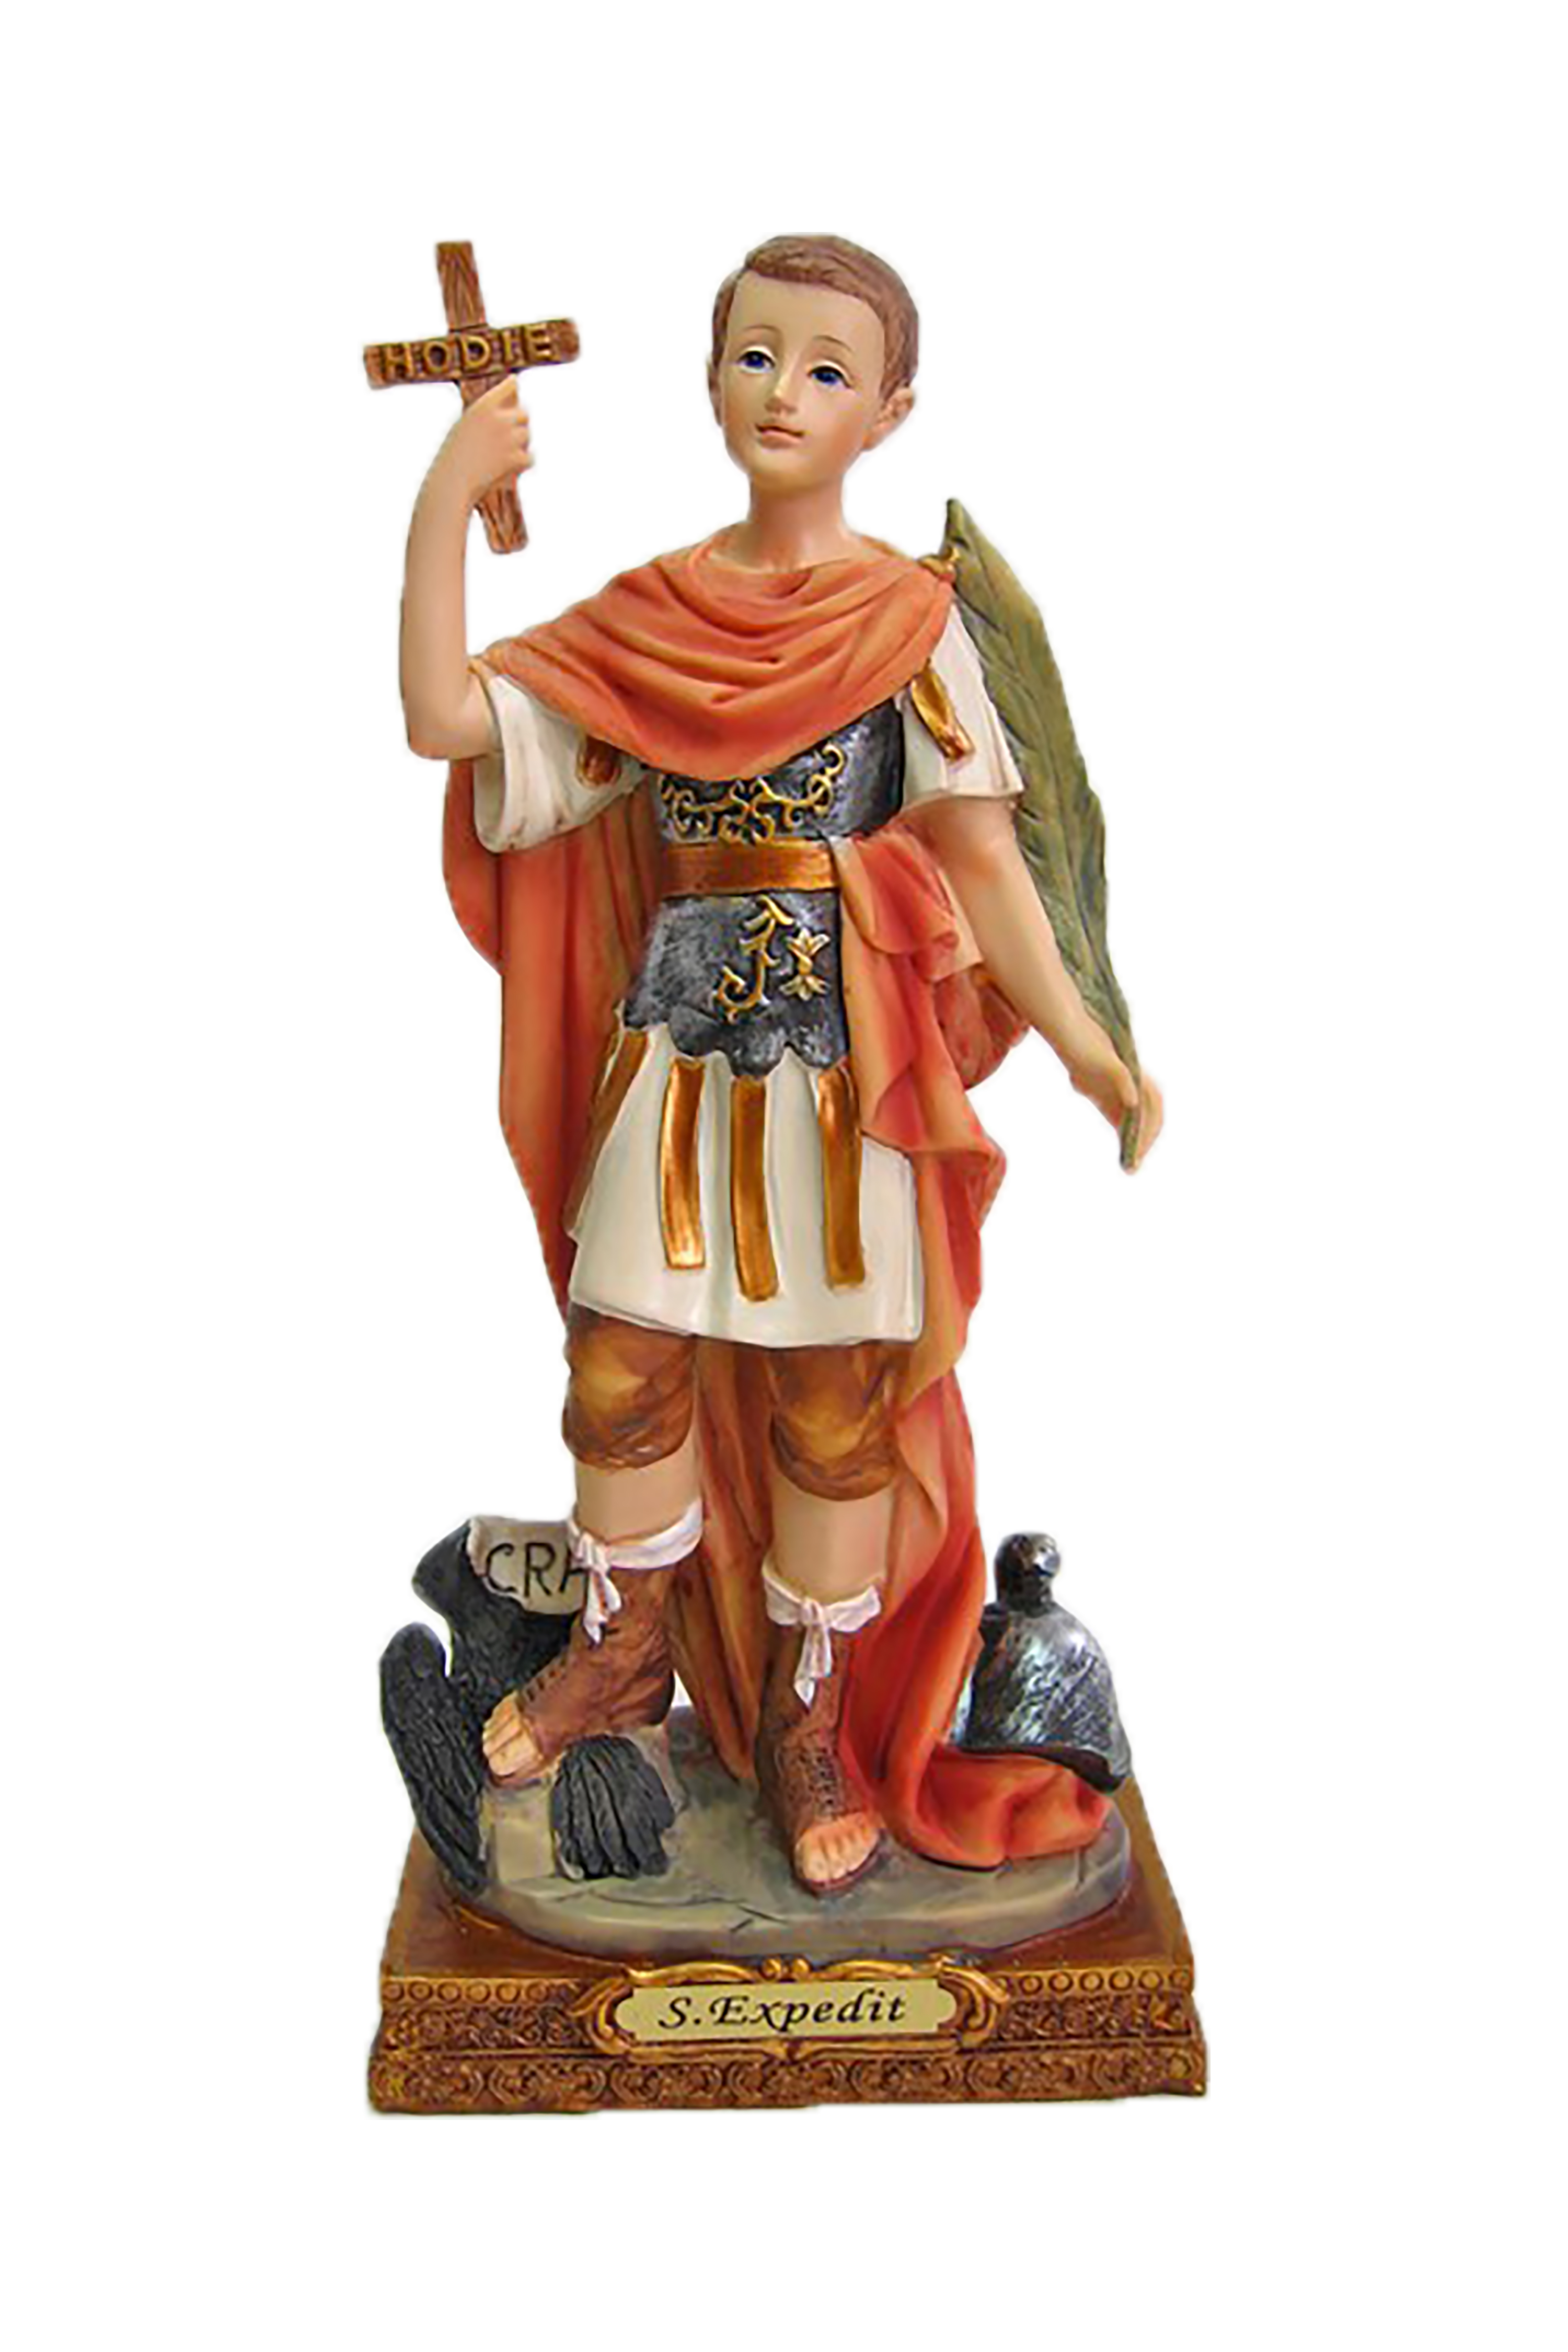 Statue des Heiligen Expeditus